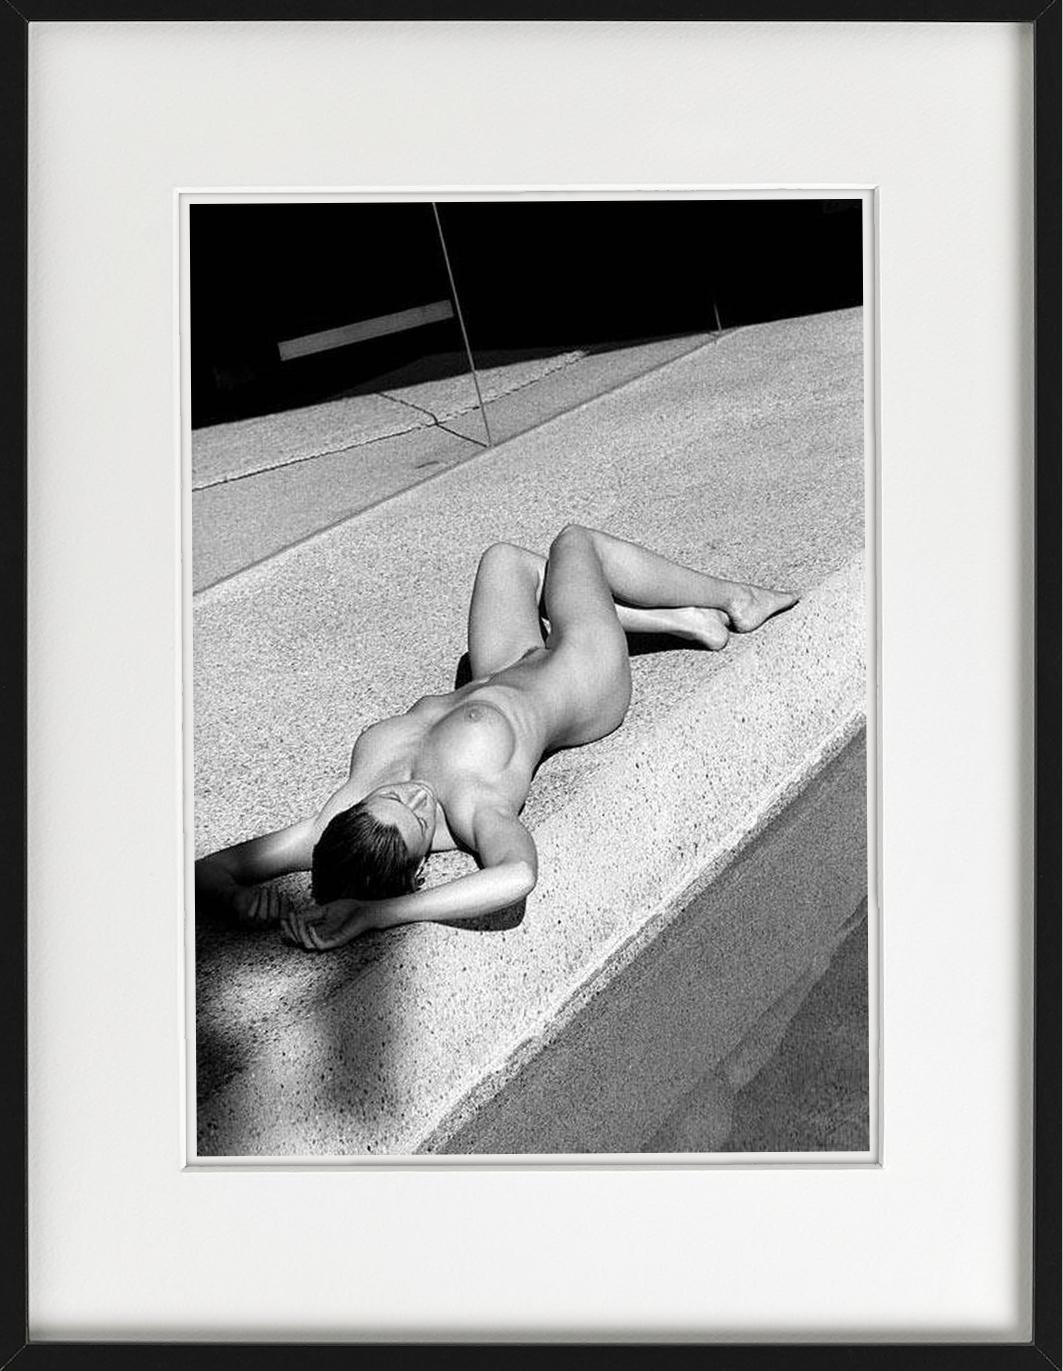 Carre Otis IV - Akt am POOL im Sonnenlicht, Kunstfotografie, 2001 – Photograph von Antoine Verglas